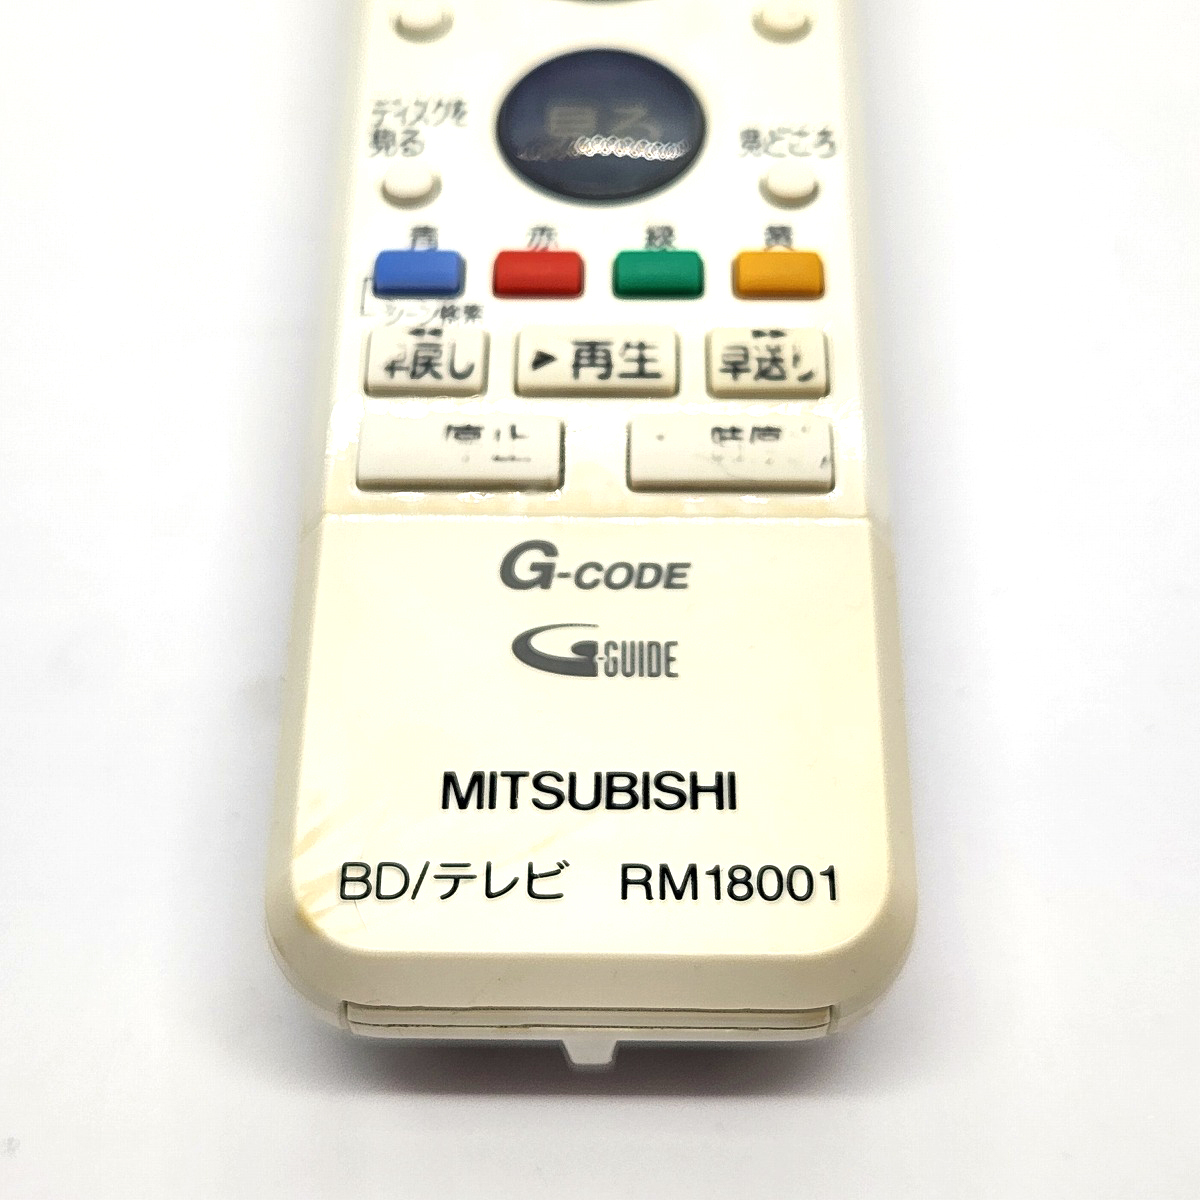 MITSUBISHI 三菱電機 RM18001 純正ブルーレイレコーダー用リモコン Blu-ray BD/テレビ DVR-BZ230 / DVR-BZ130_画像3